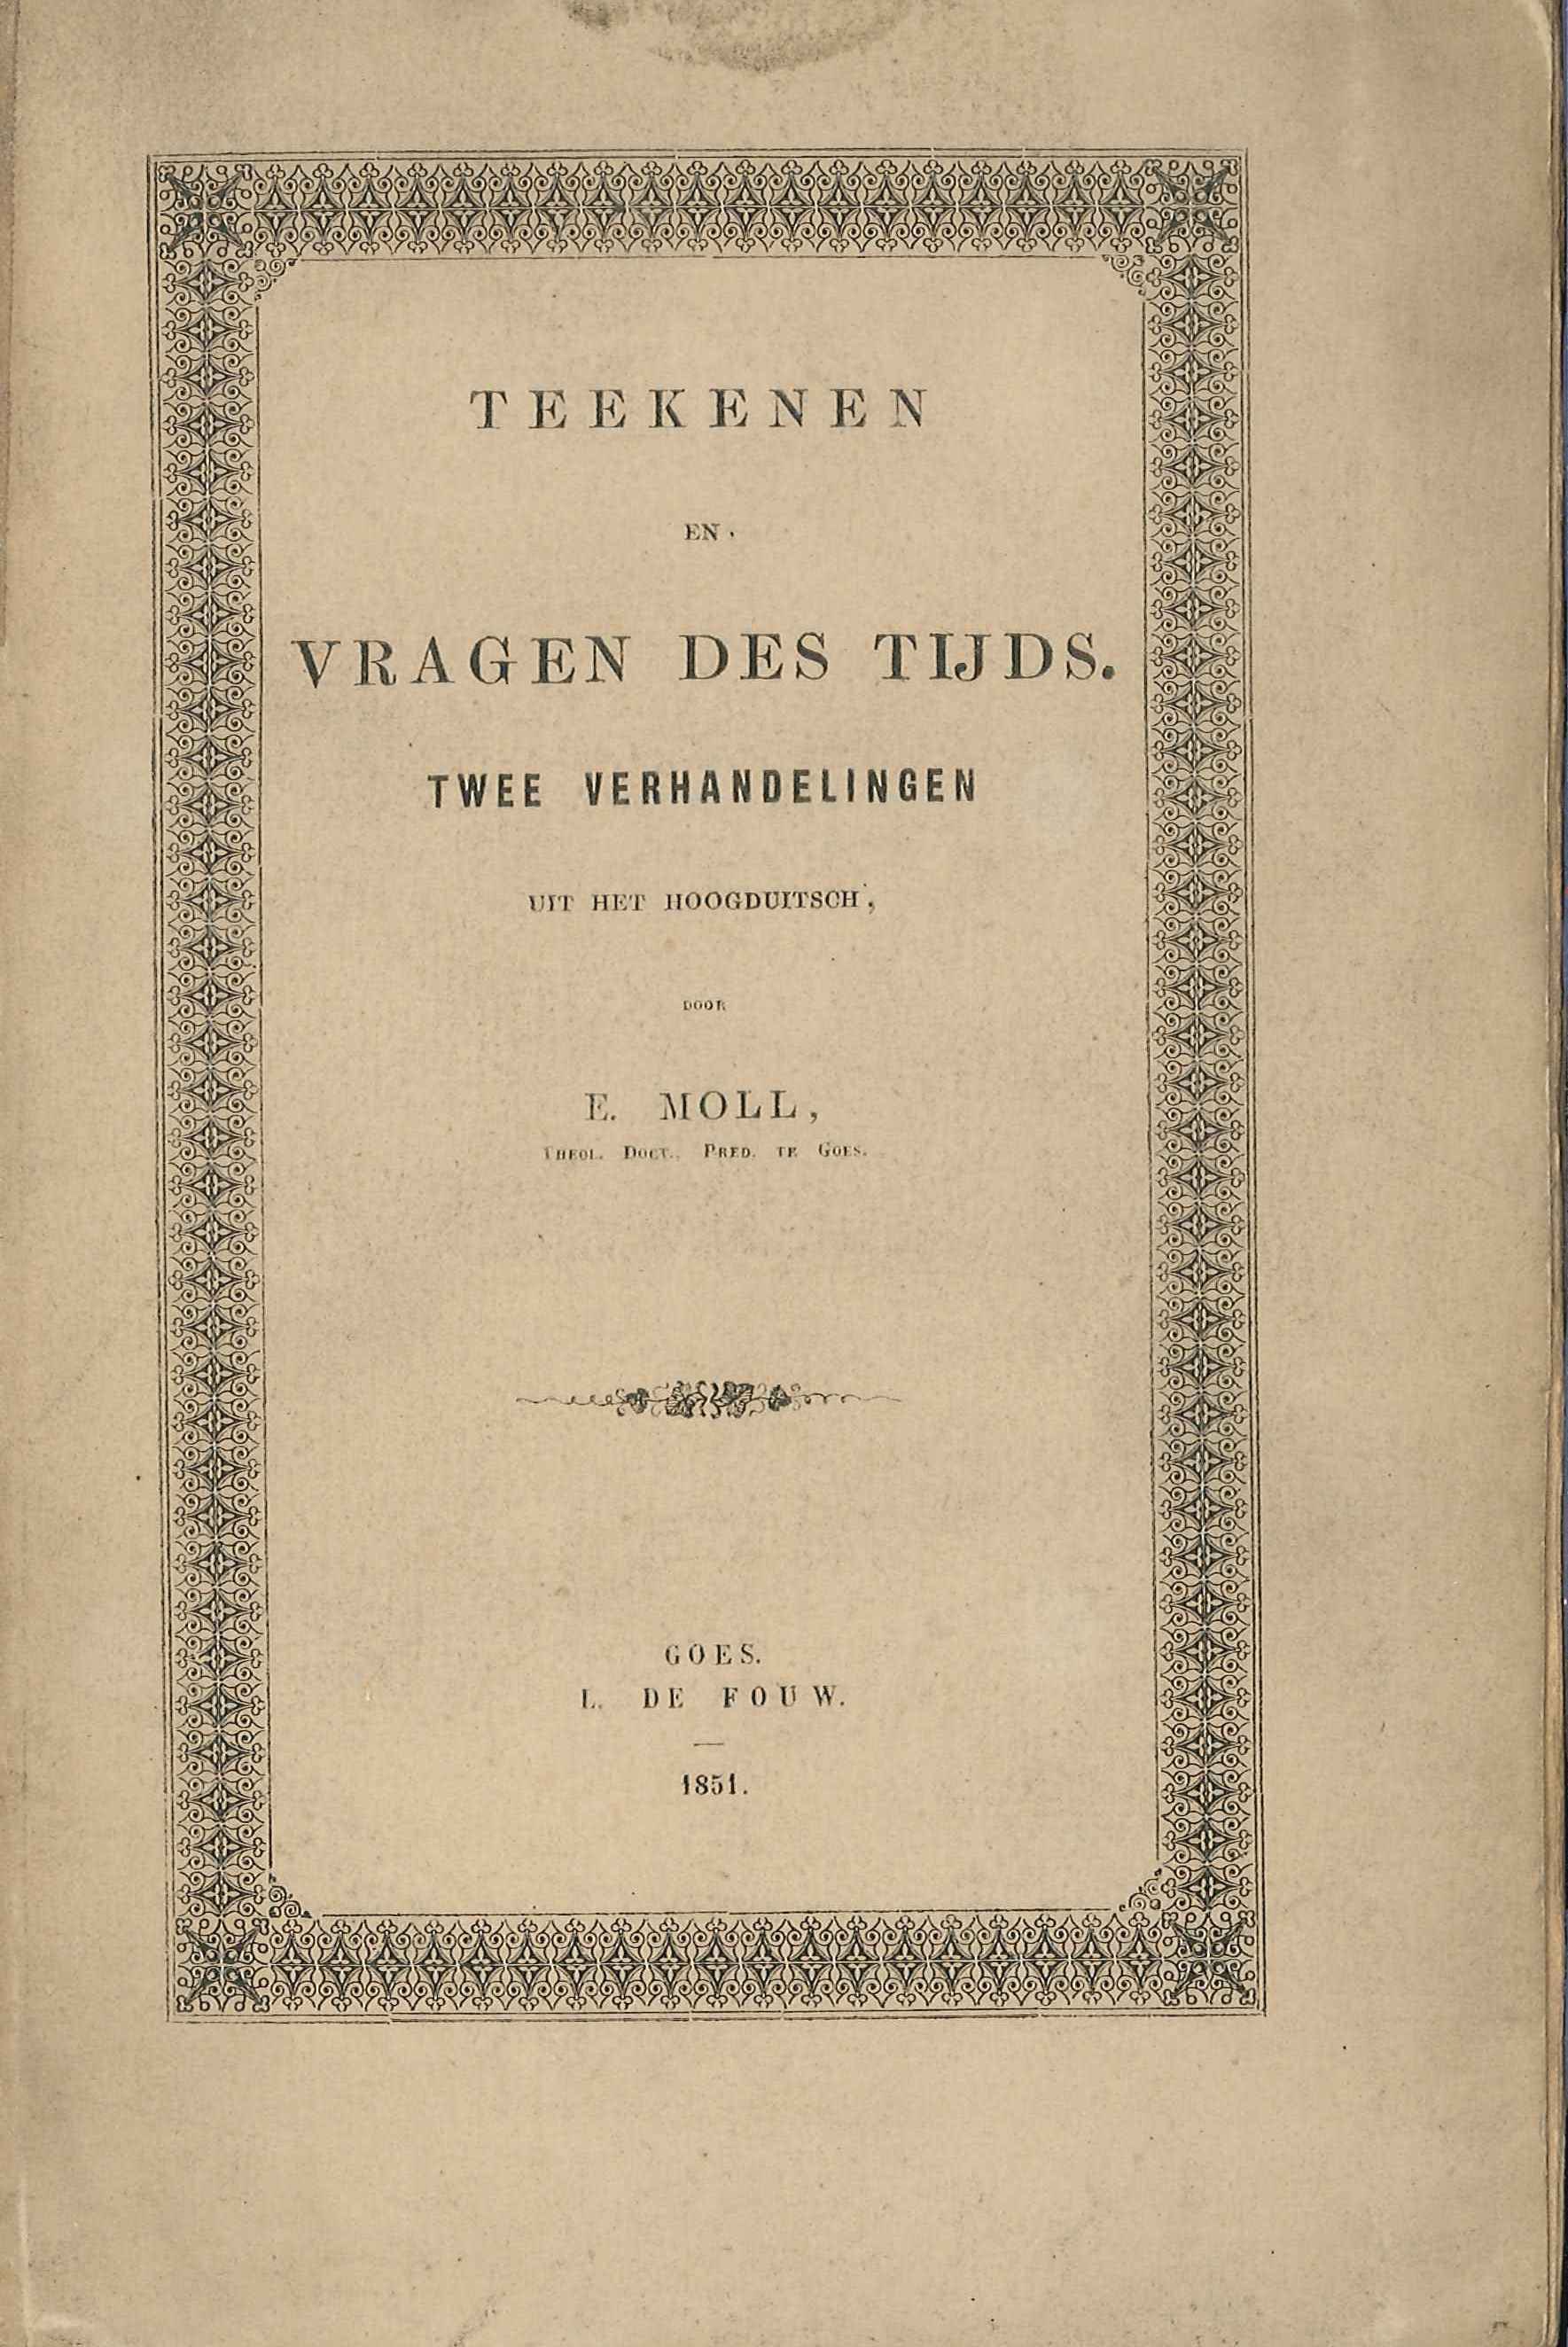 Titelblad van Teekenen en Vragen des Tijds, door ds. Moll uit Goes. Goes 1851. GAG.HB.